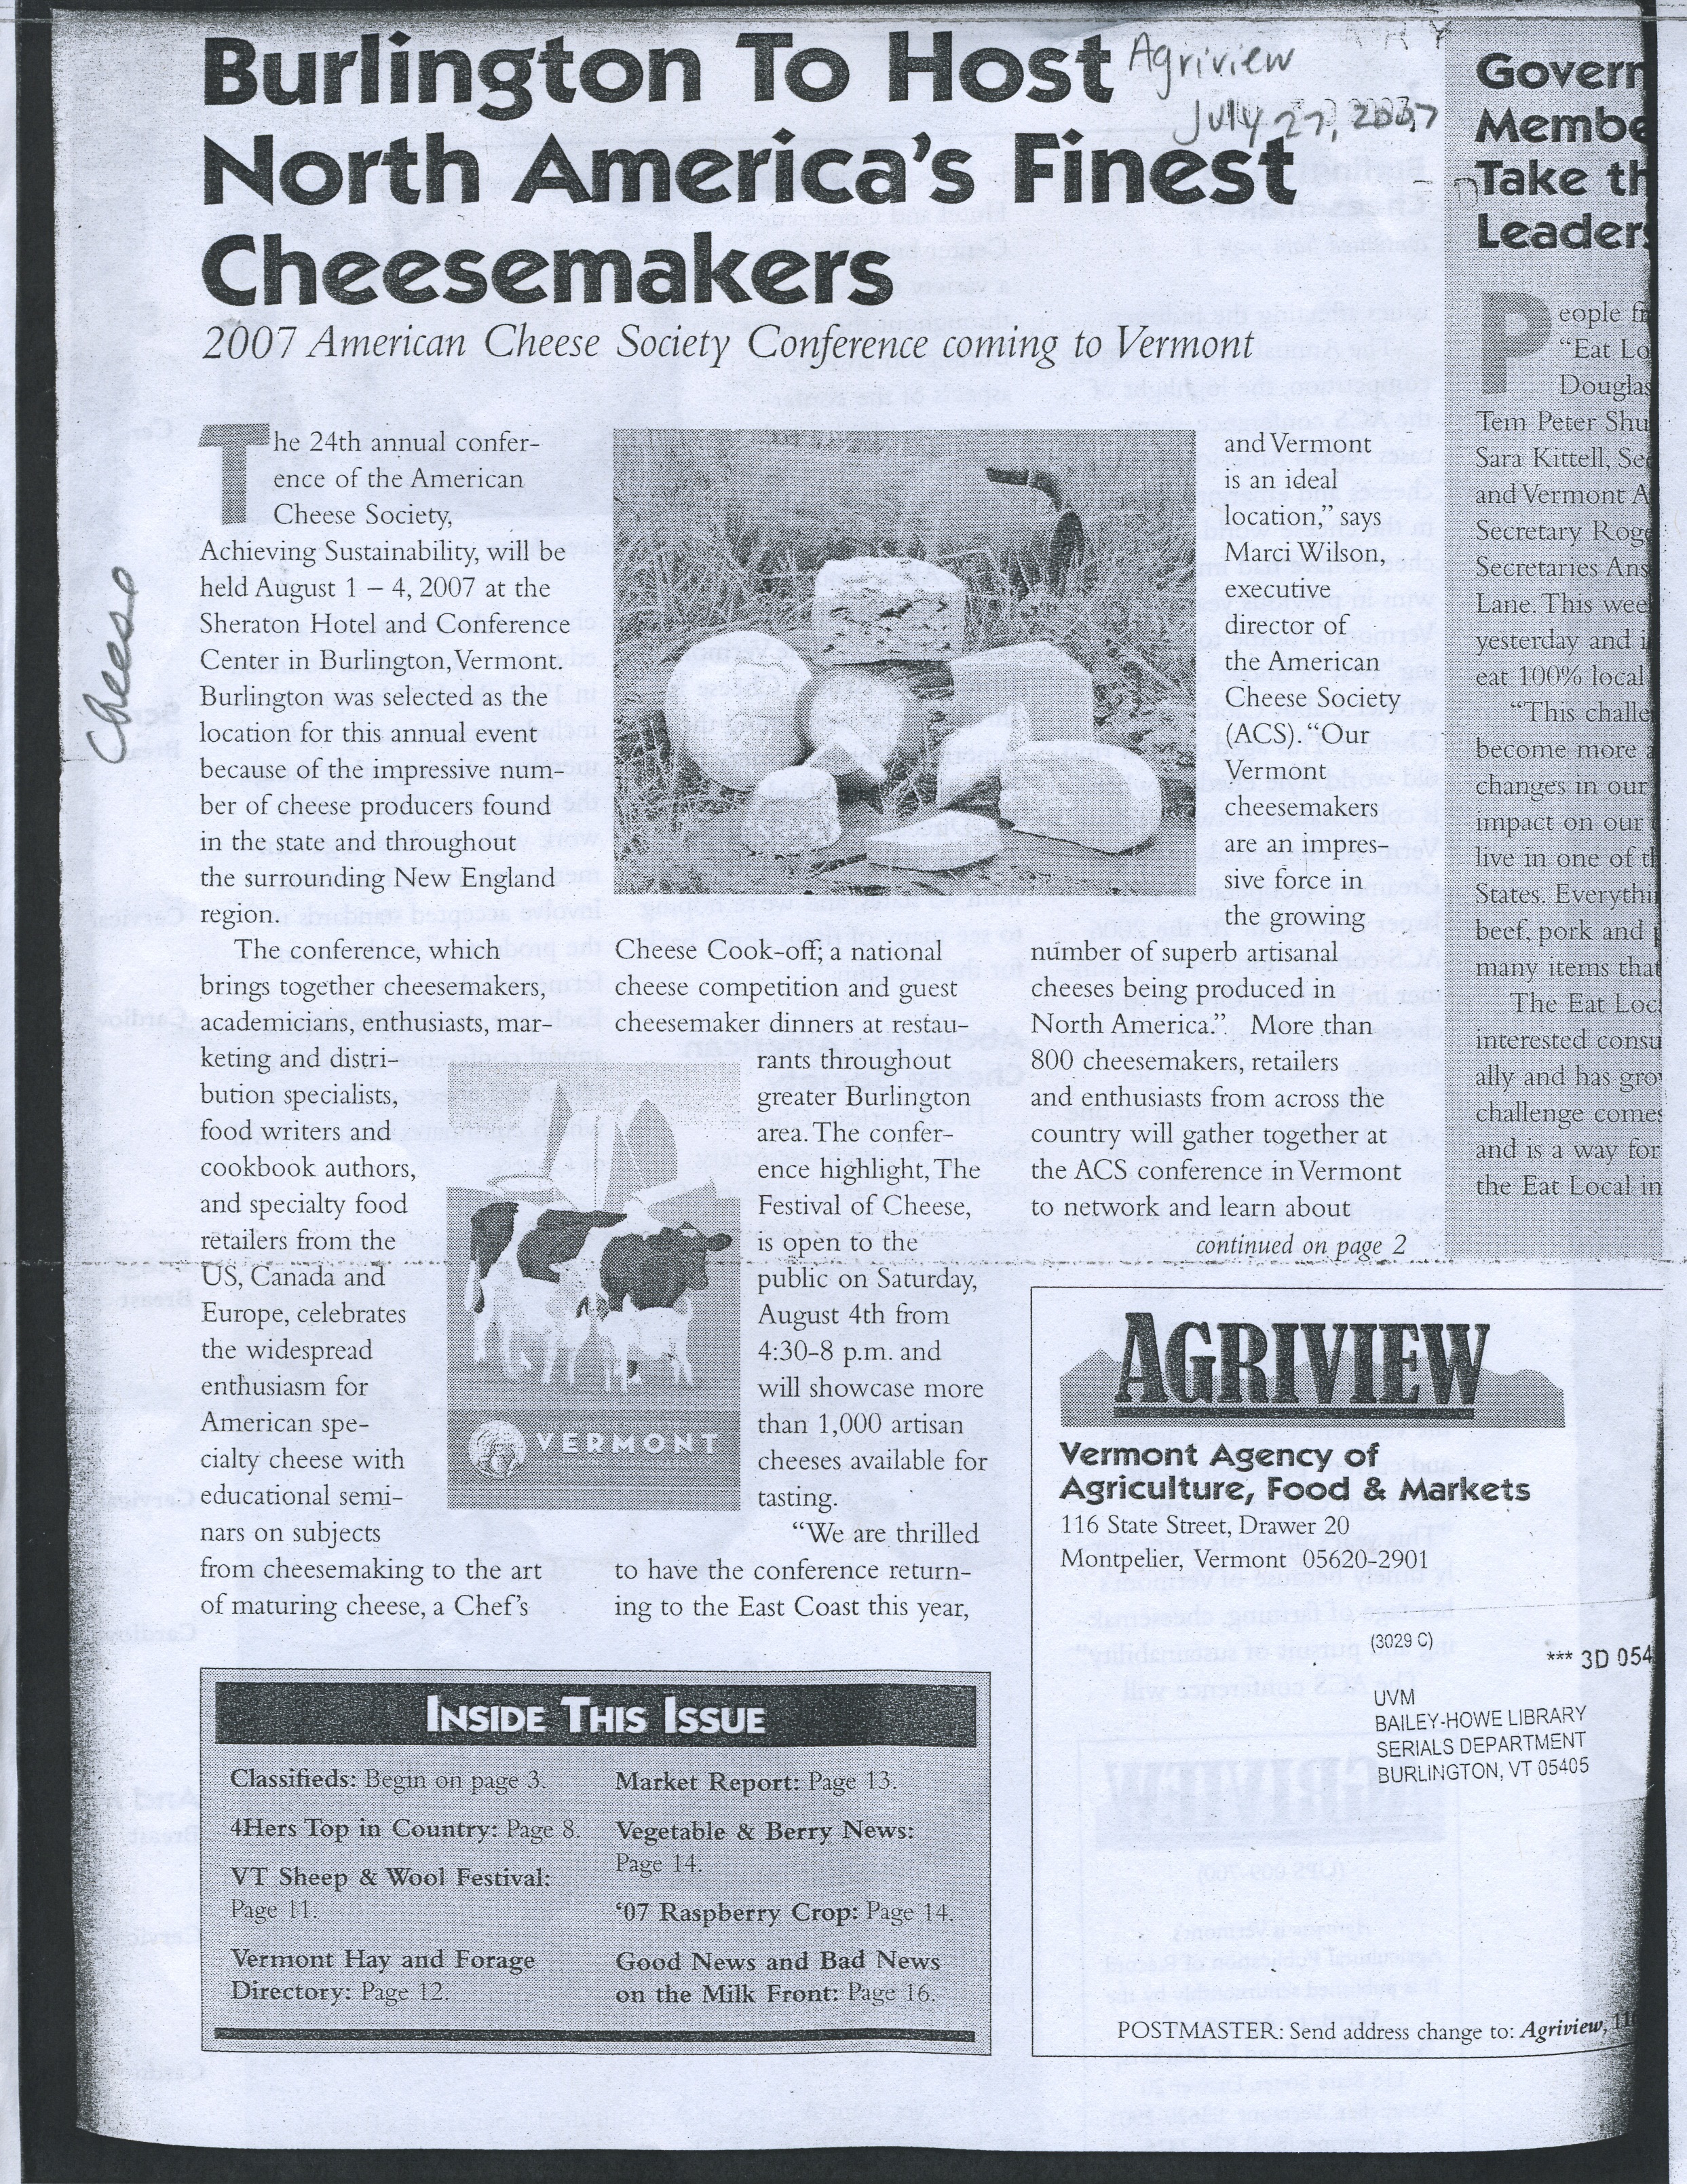 IEZ-2007-Burlington Host Cheesemakers.jpg